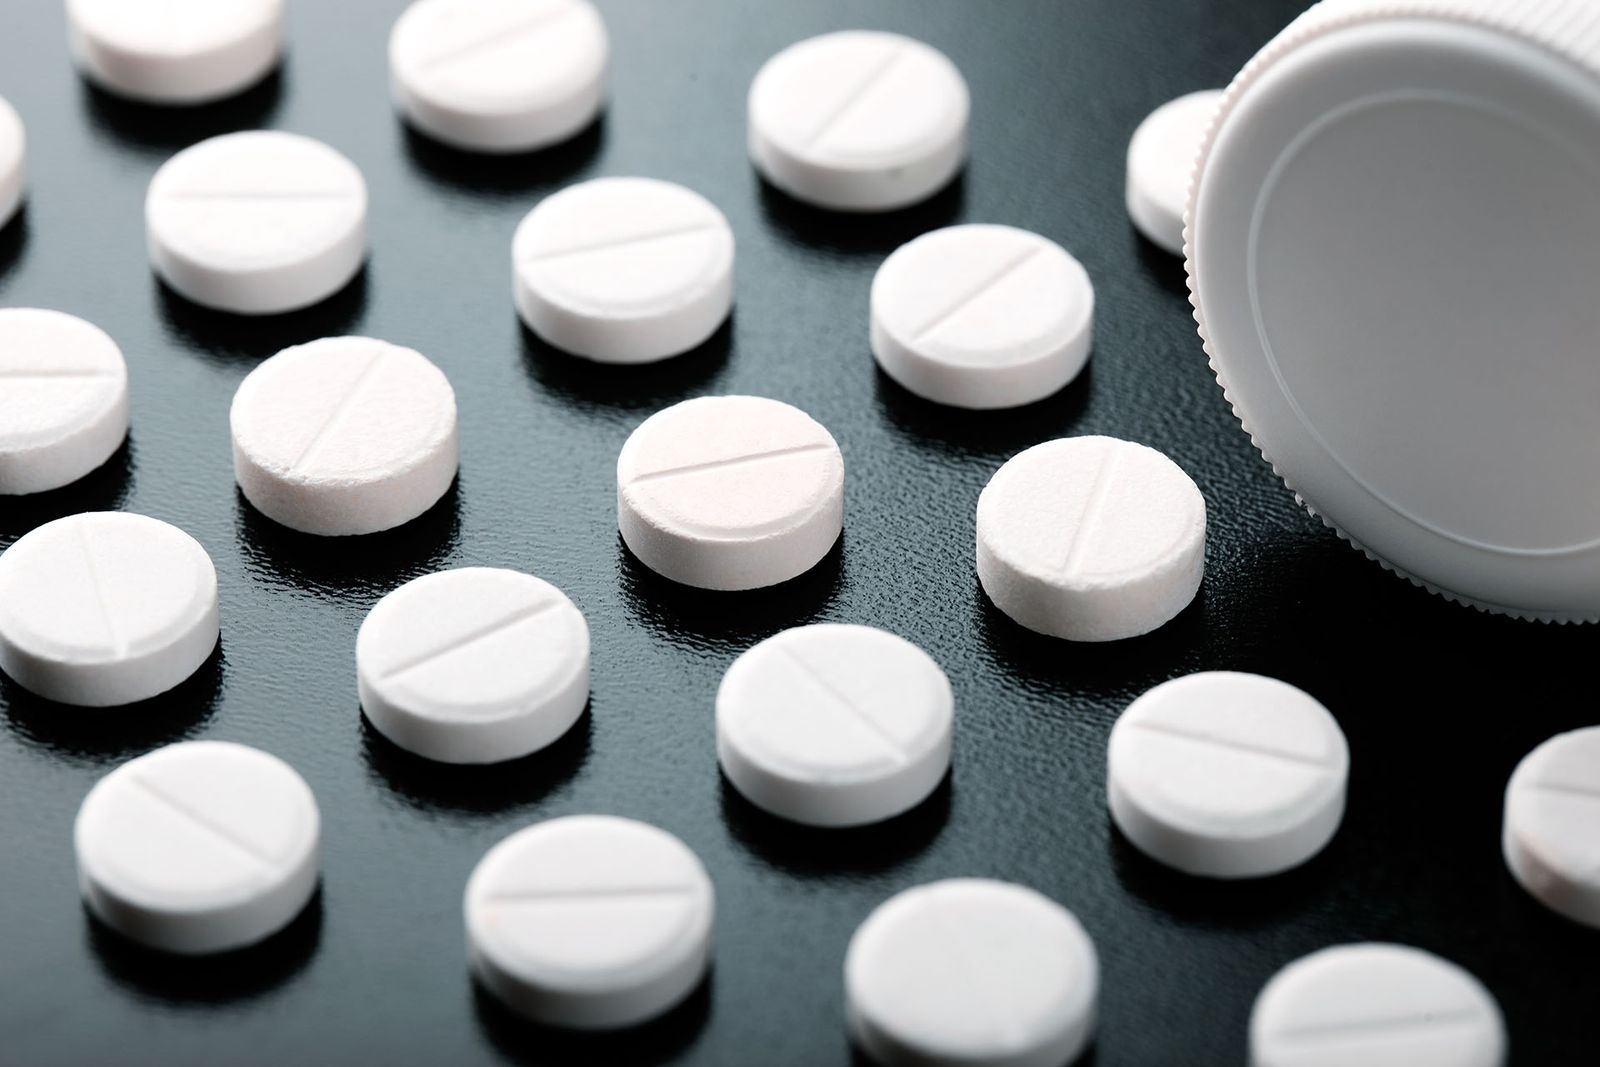 What Makes Valium (Diazepam) So Addictive